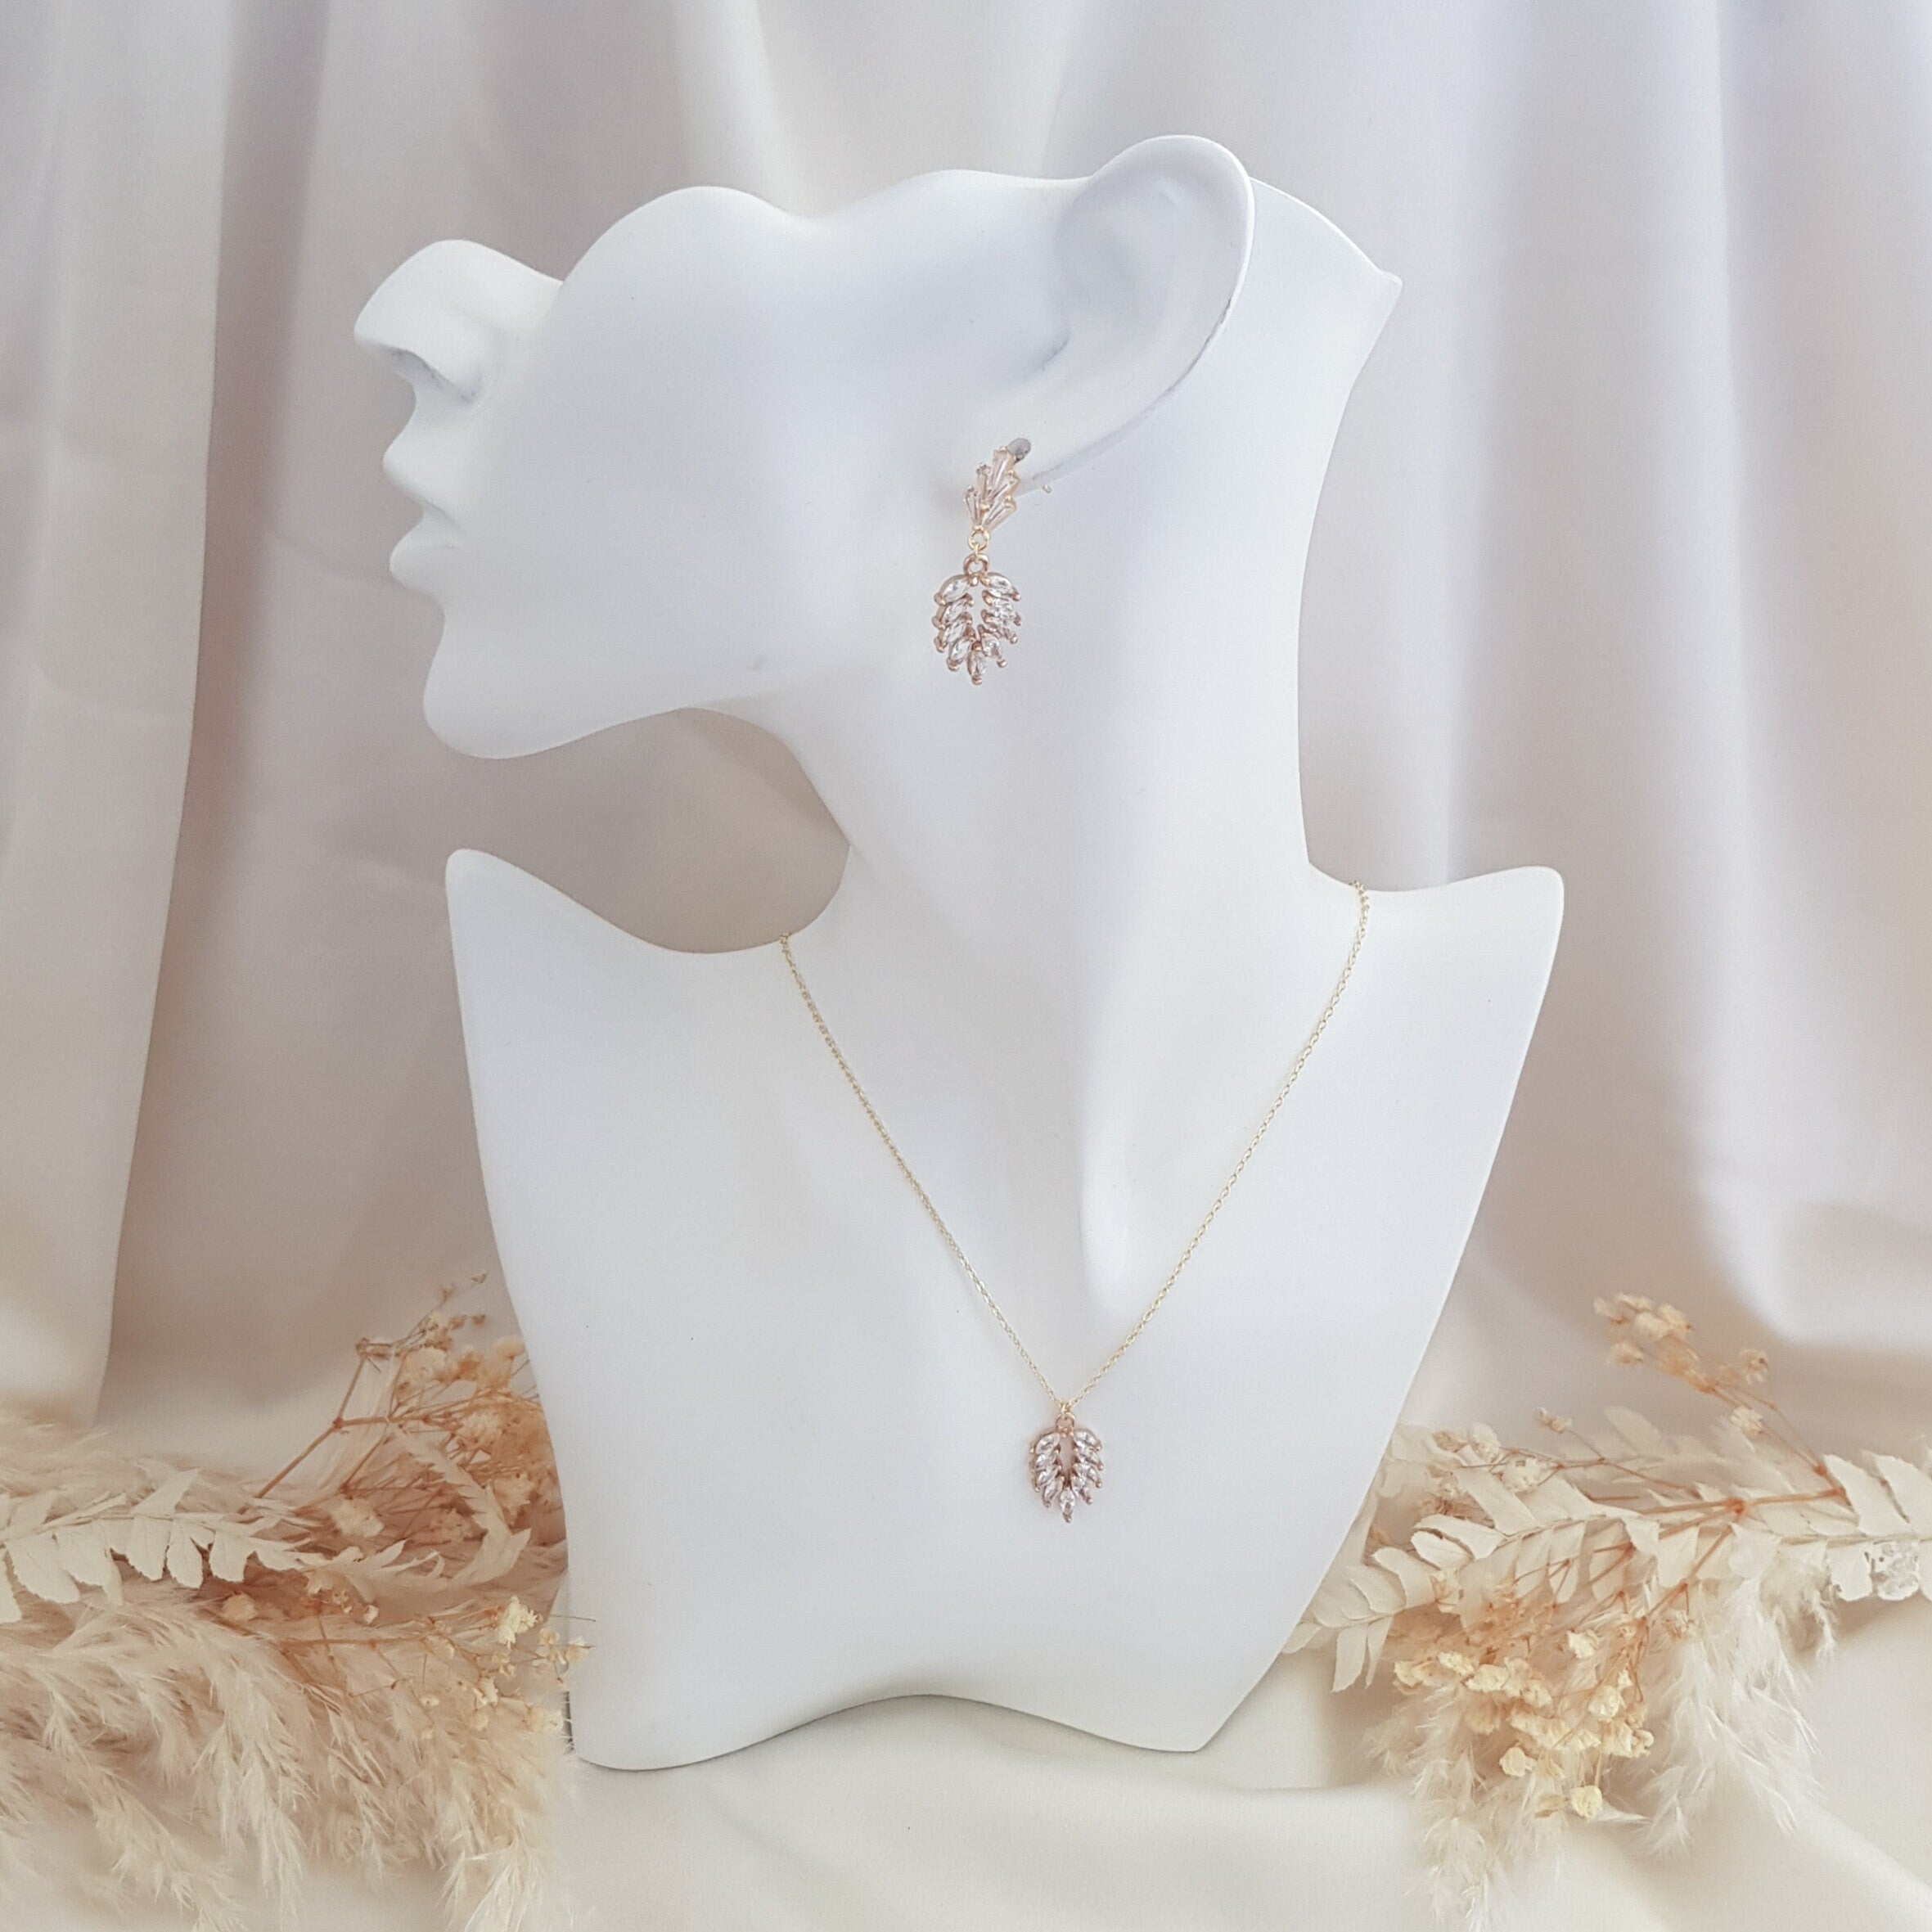 Boho Earrings, Bridal Earrings, Crystal Earrings, Gold Earrings, Wedding Earrings, Bridesmaid Gift, Crystal Earrings, Bridal Jewellery